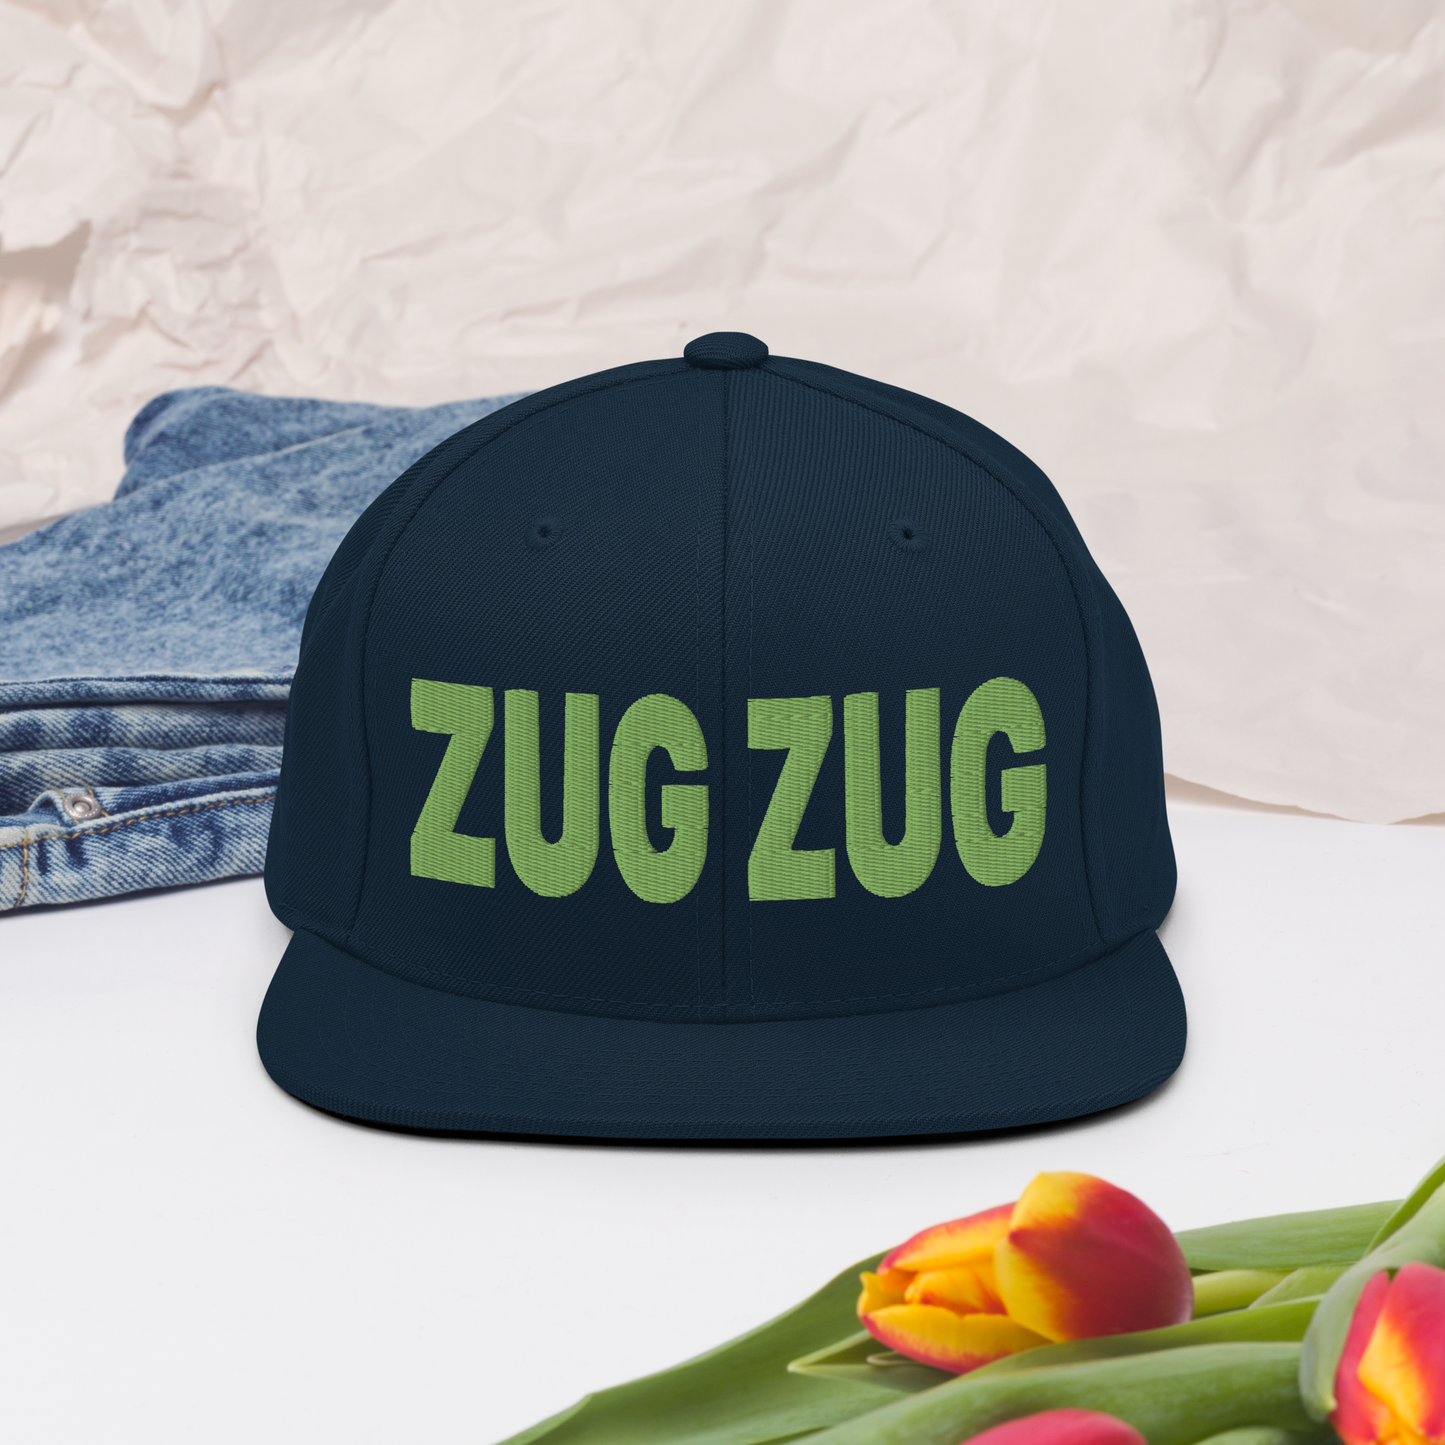 ZUG ZUG Hat